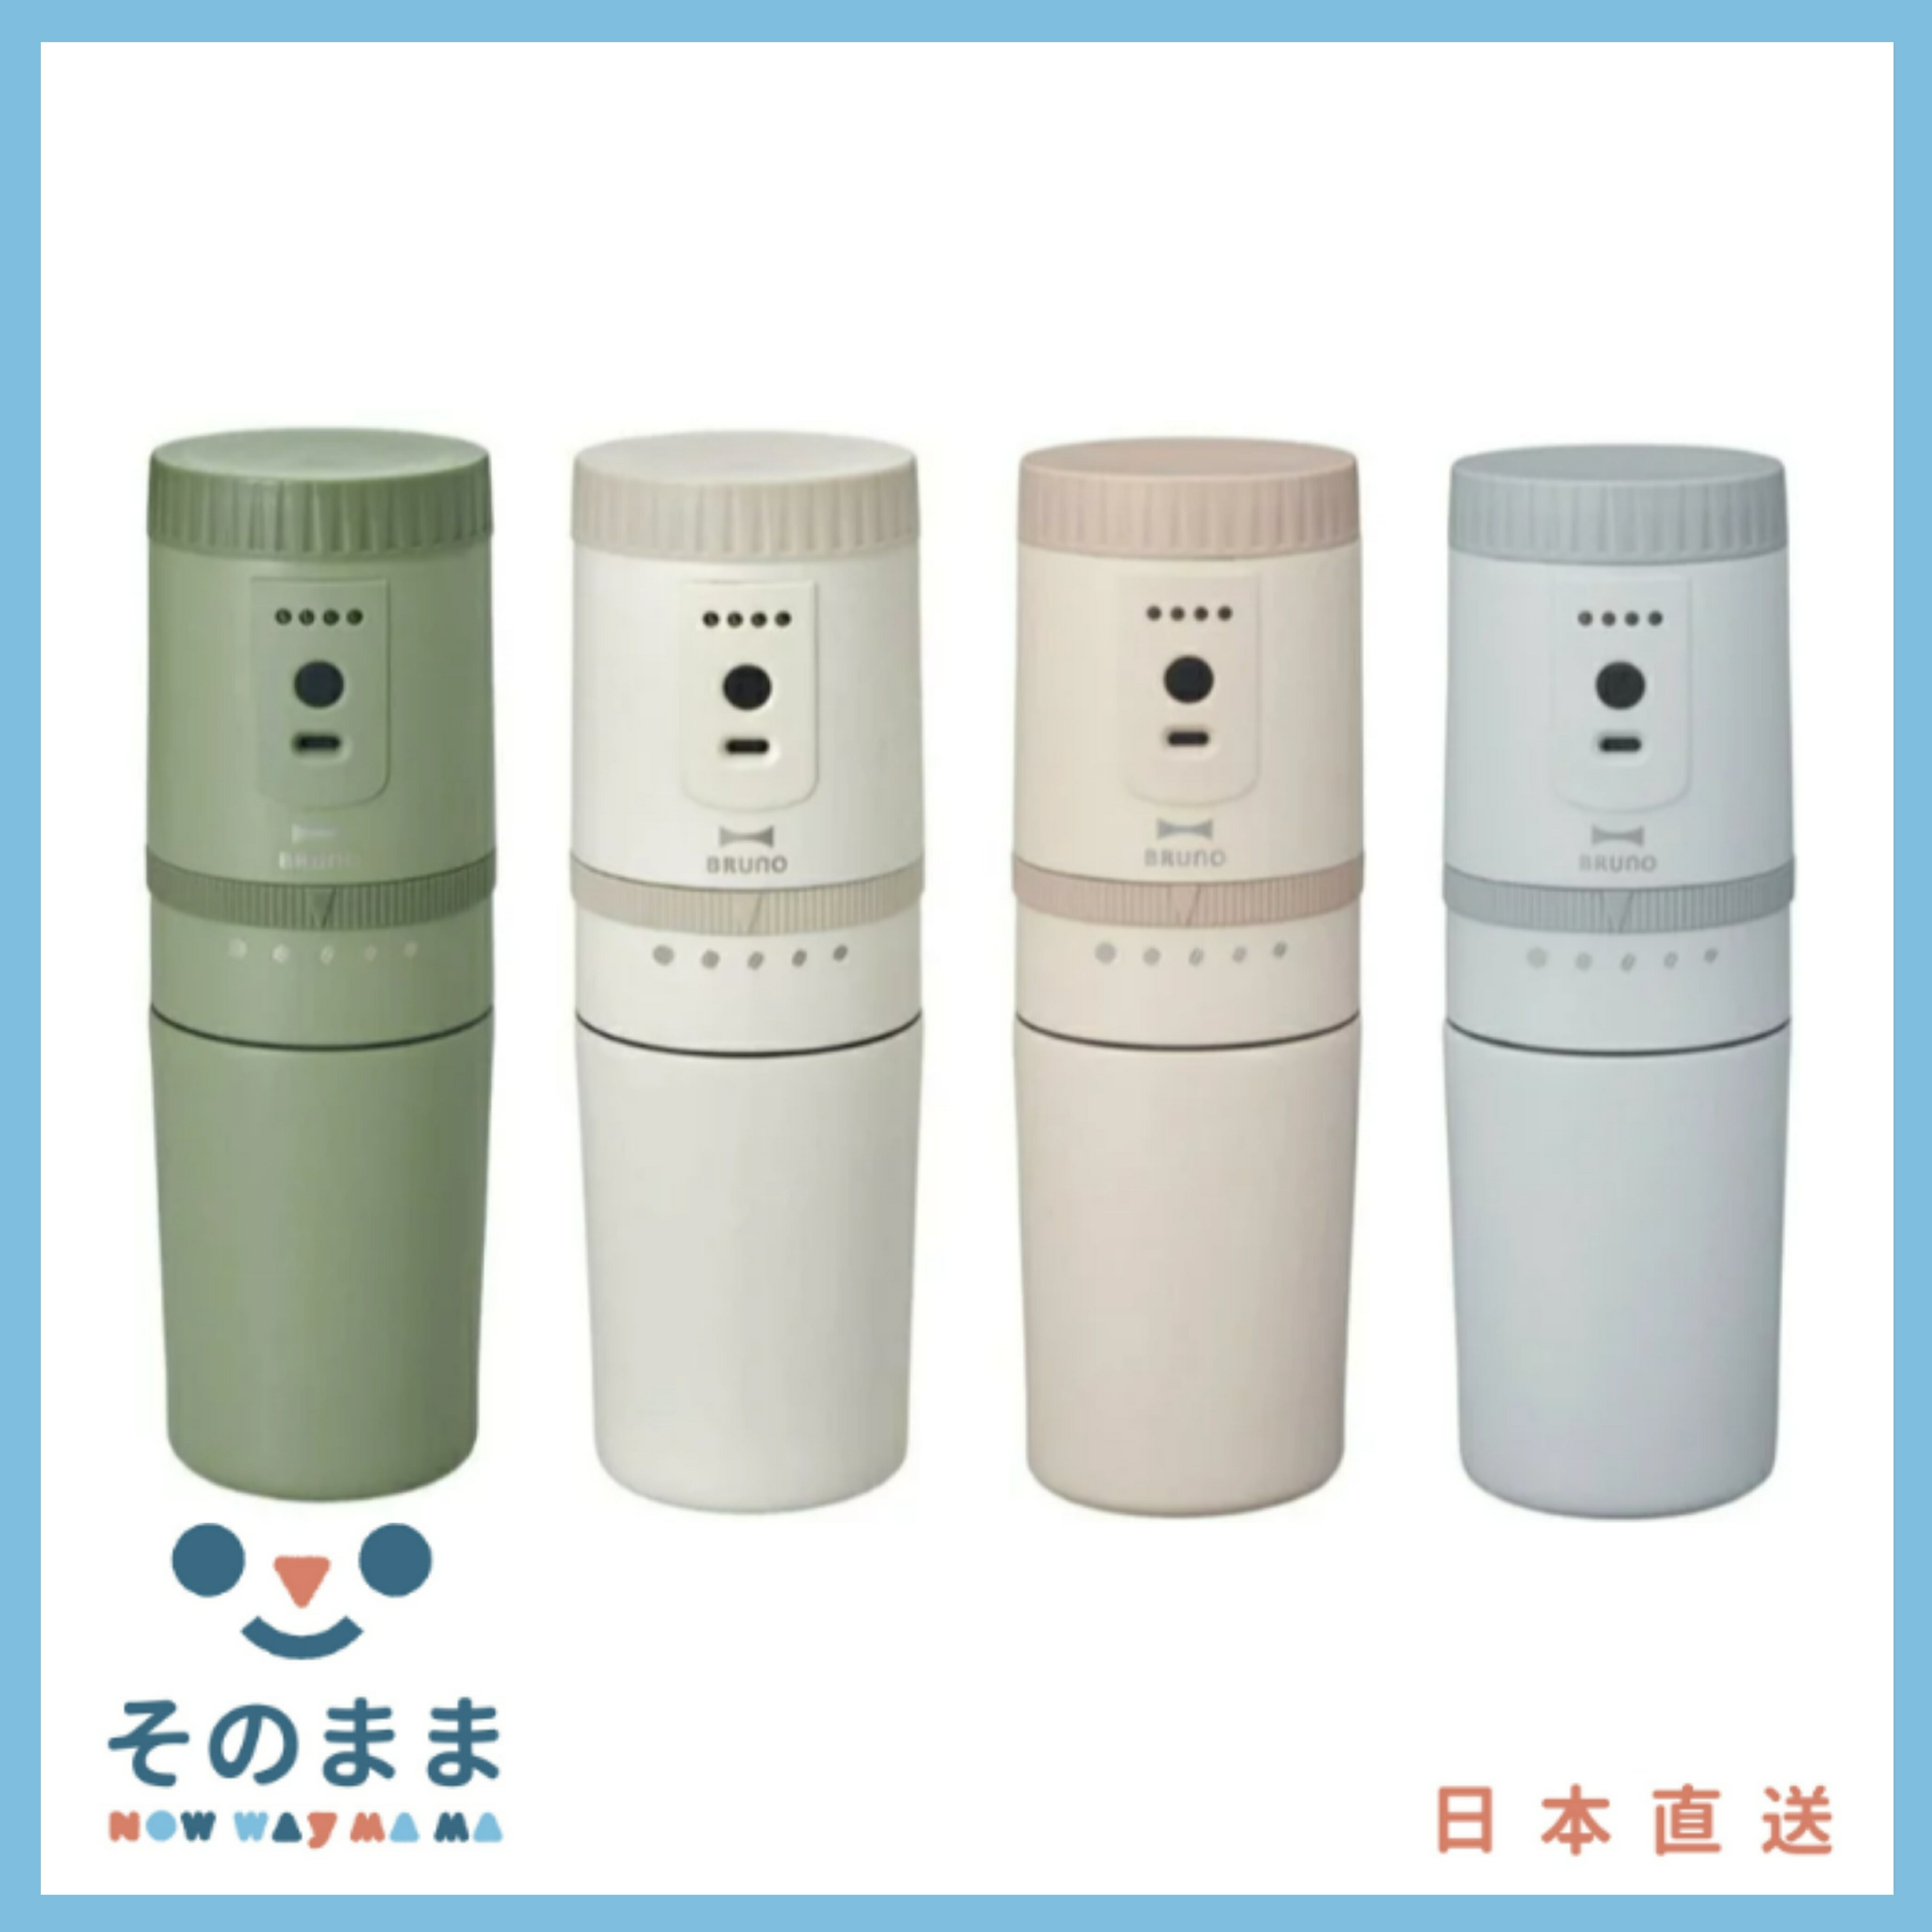 【日本出貨丨火箭出貨】BRUNO BOE080 電動磨咖啡機 可充電 全自動不銹鋼 保溫 緊湊型 咖啡 USB充電